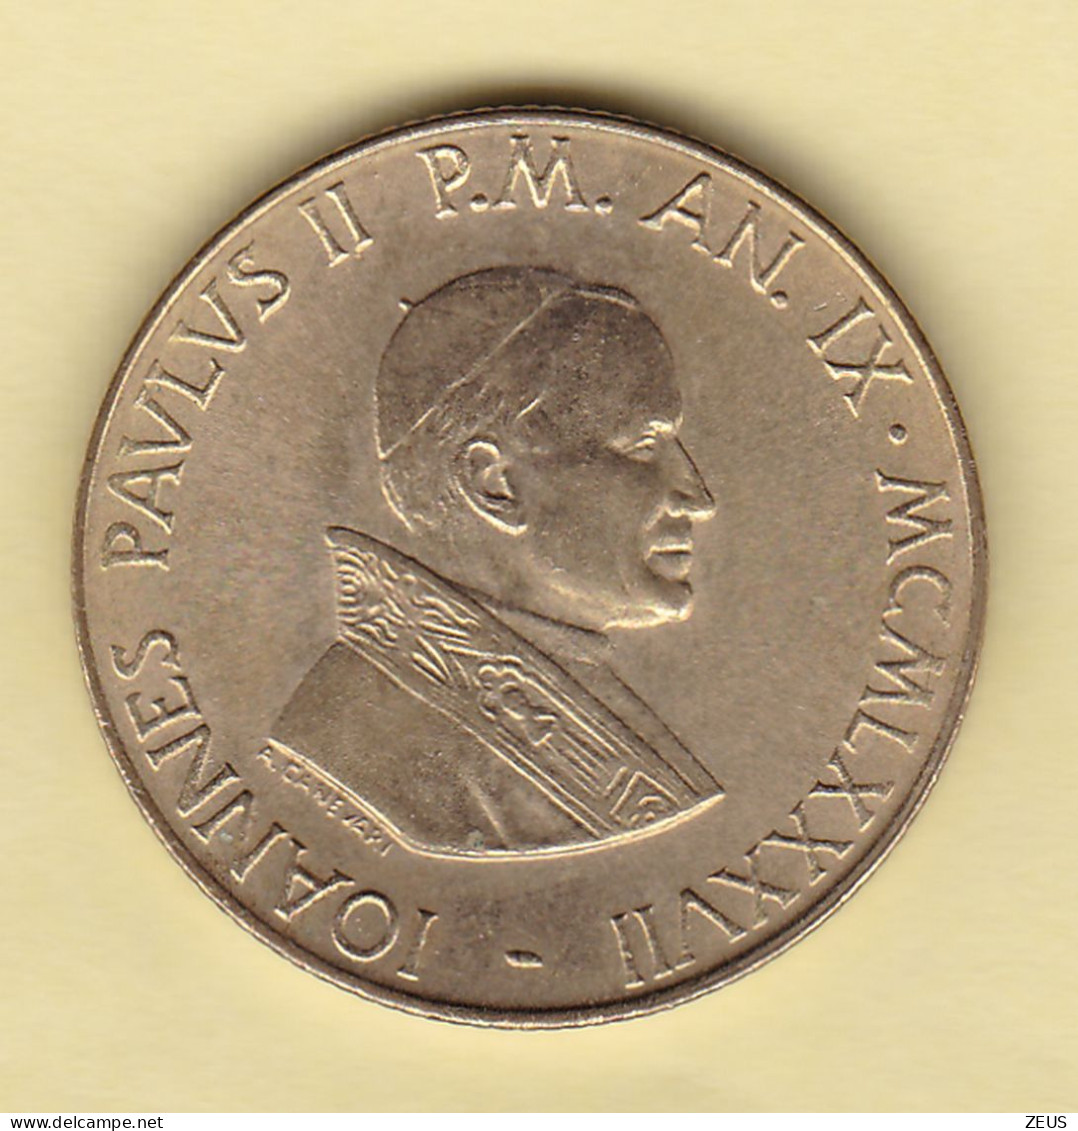 200 LIRE 1987 FDC VATICANO GIOVANNI PAOLO II - Vatican